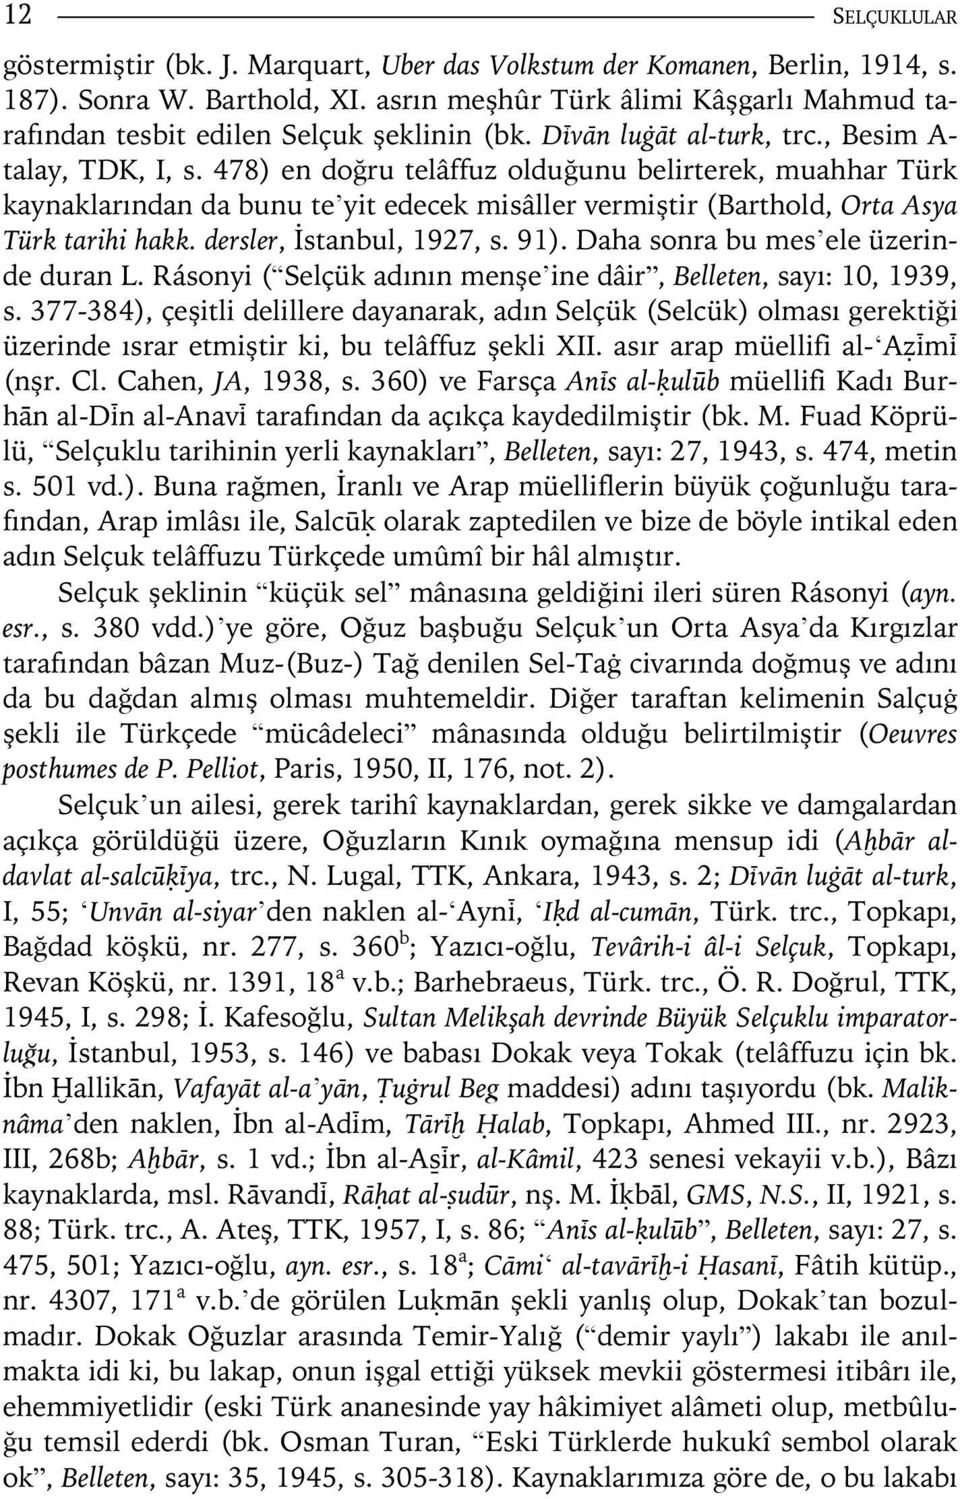 478) en doğru telâffuz olduğunu belirterek, muahhar Türk kaynaklarından da bunu te yit edecek misâller vermiştir (Barthold, Orta Asya Türk tarihi hakk. dersler, İstanbul, 1927, s. 91).